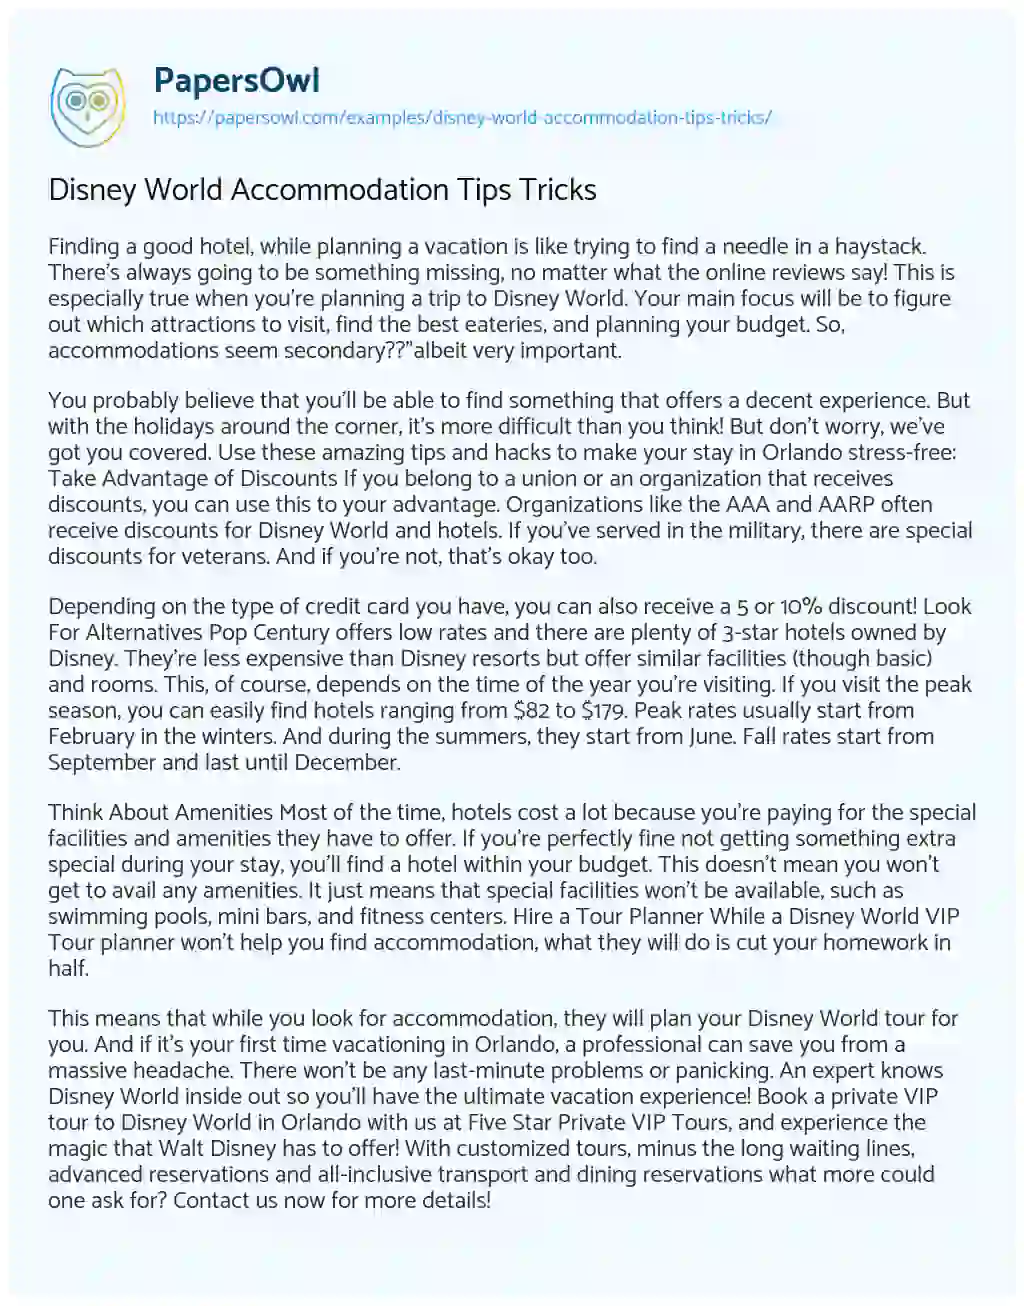 Disney World Accommodation Tips Tricks essay